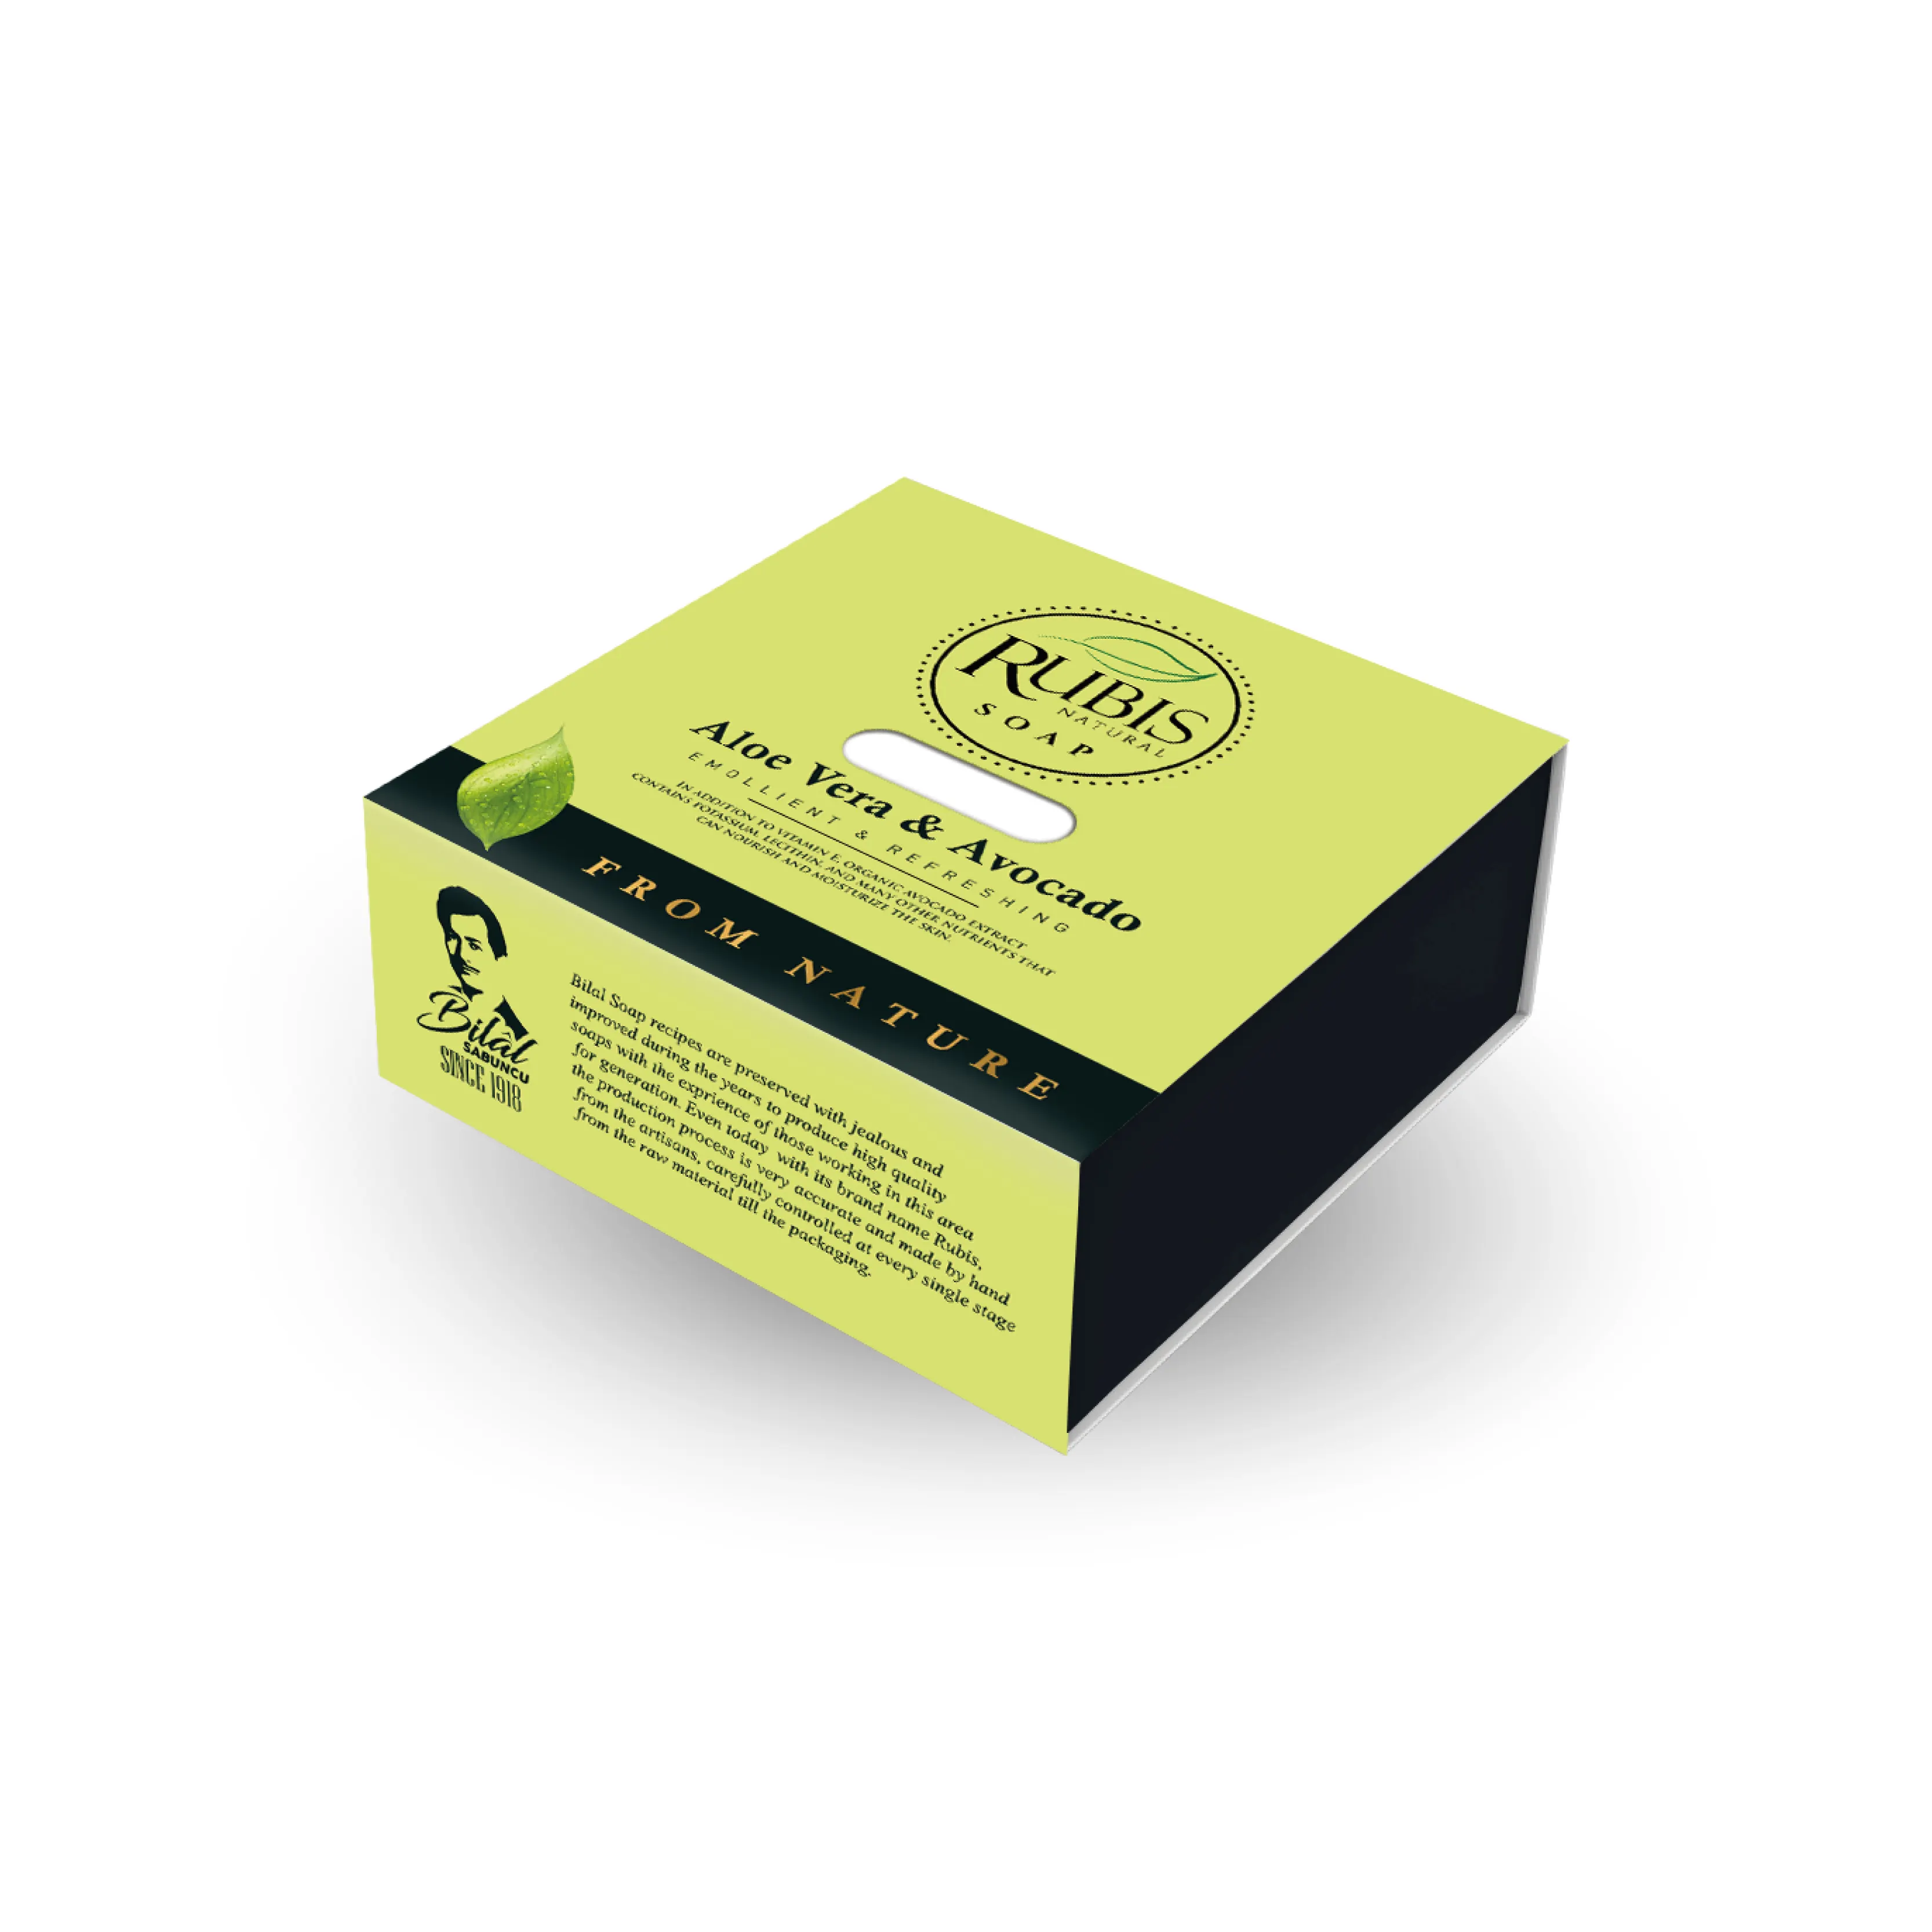 RUBIS - 125 gr de jabón emoliente y refrescante en caja jabón Natural Aloe Vera y extracto de aguacate